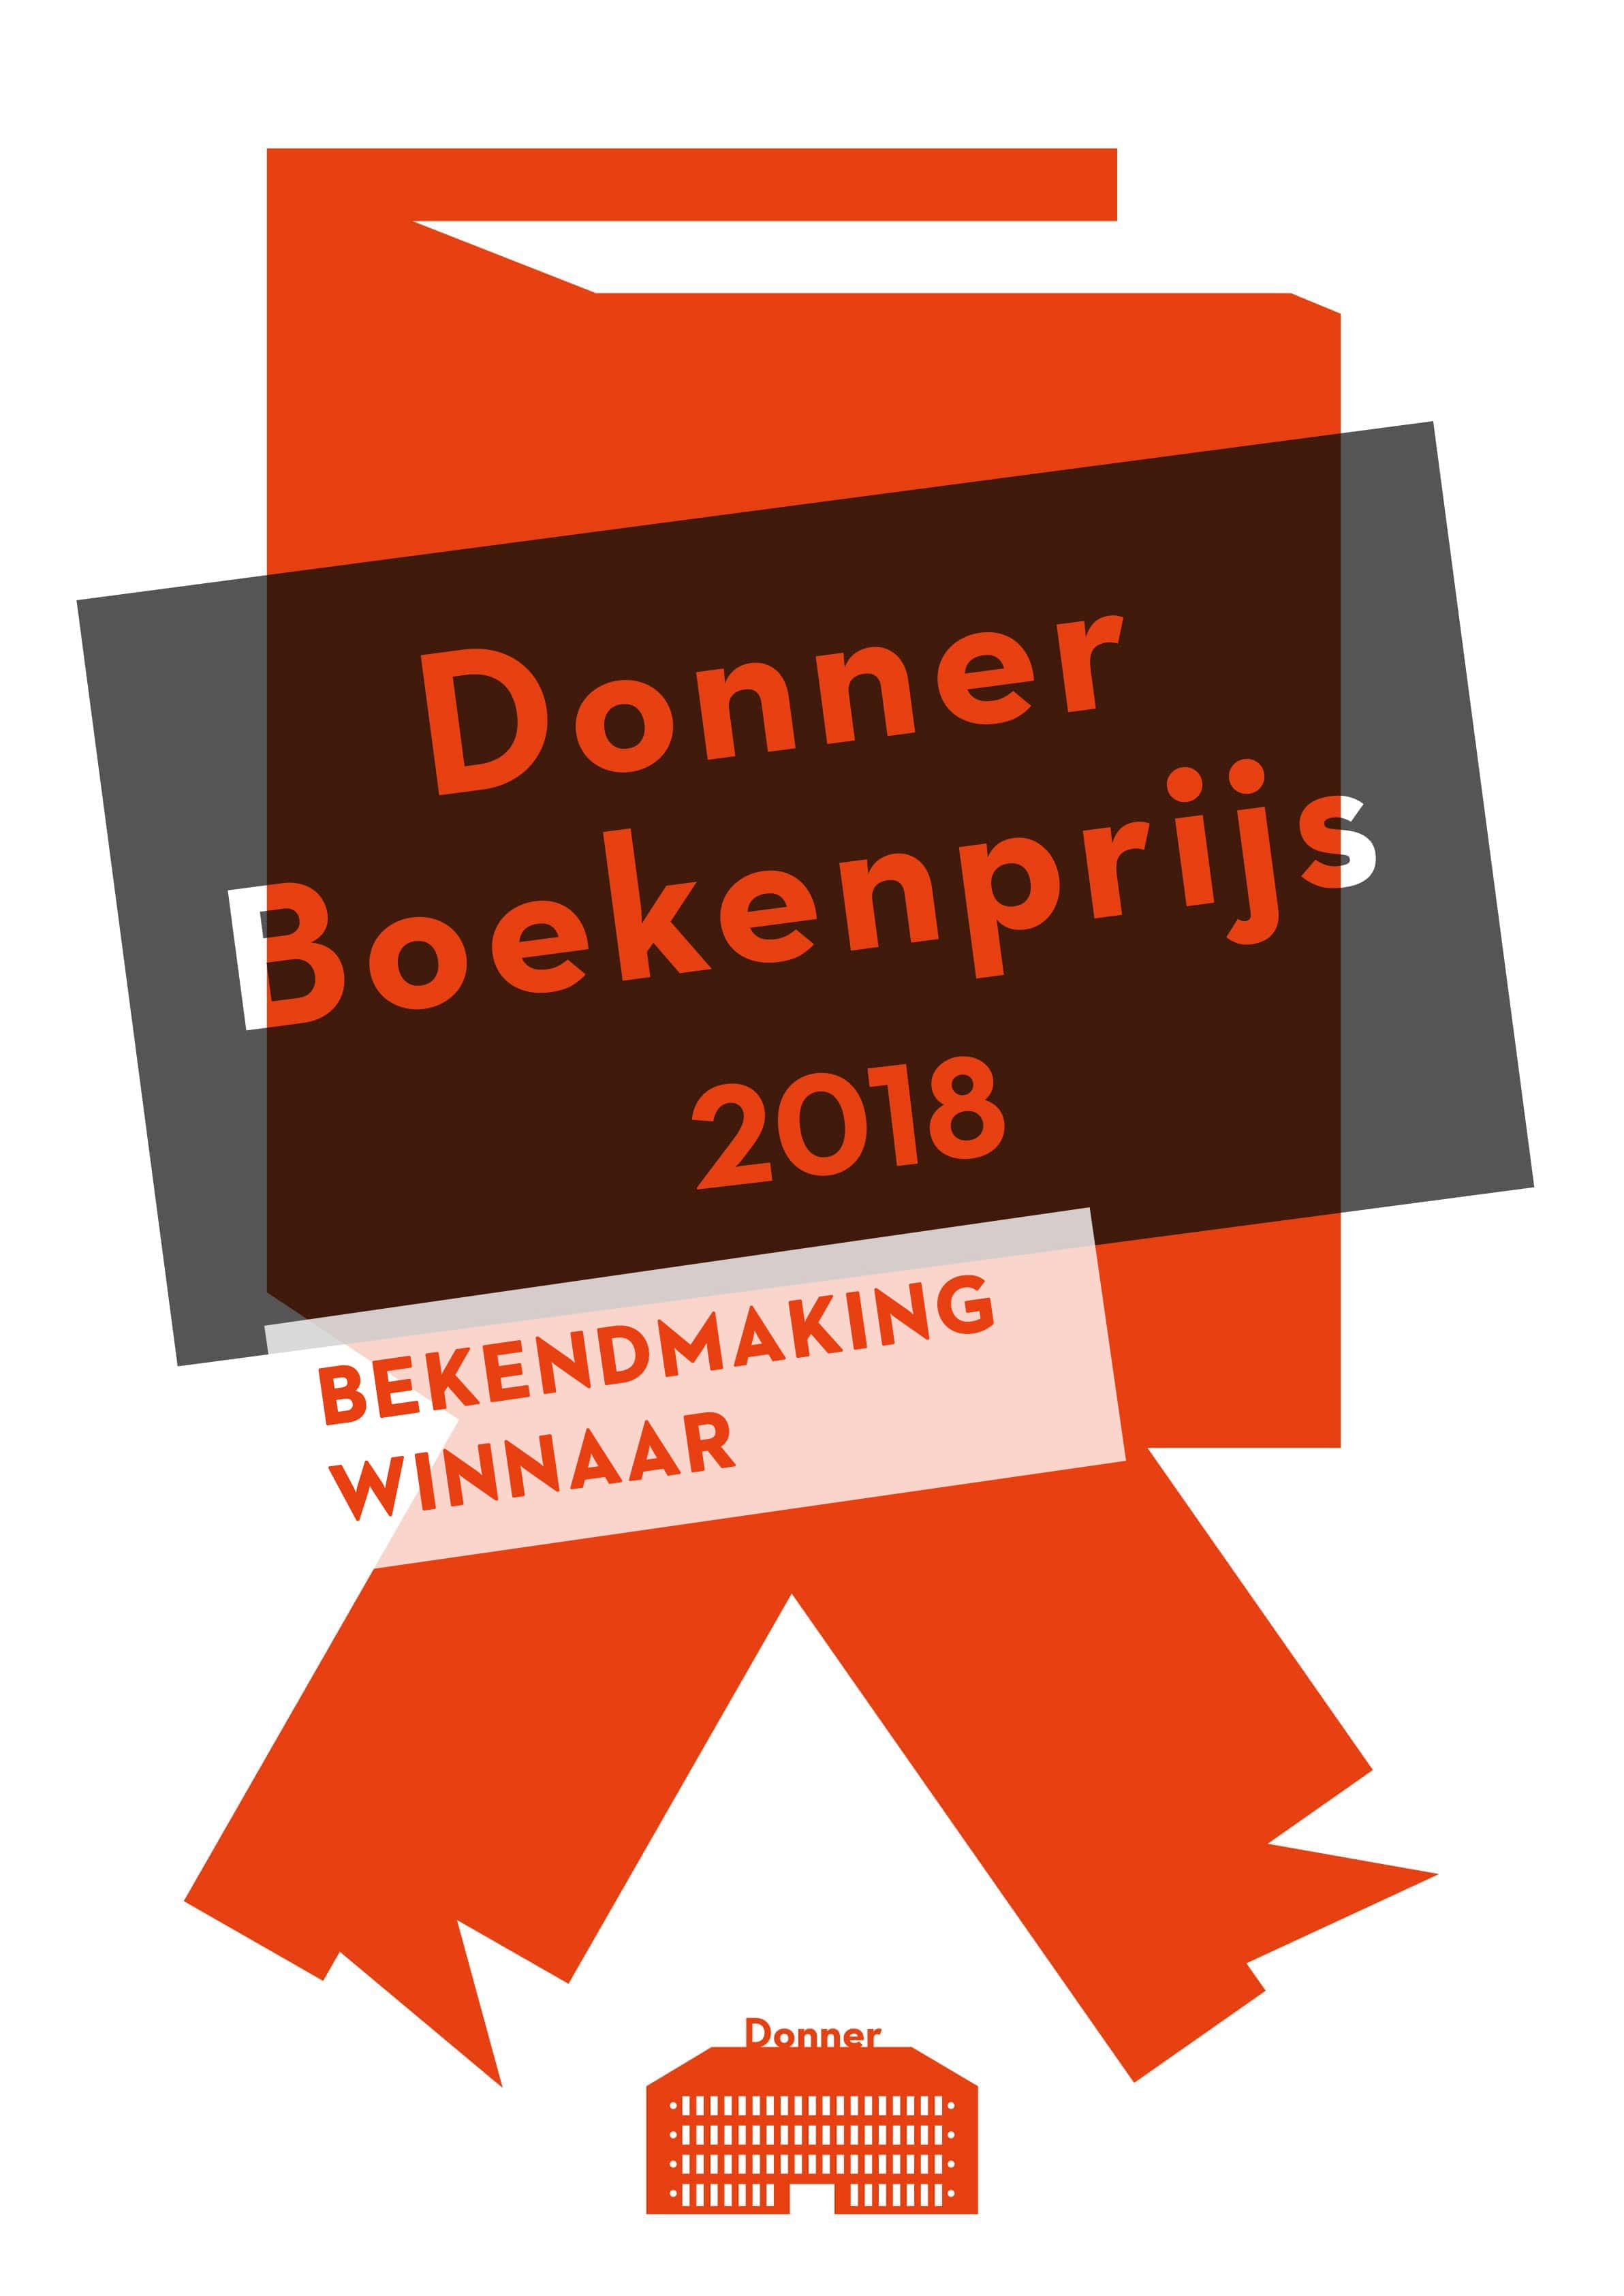 Donner Boekenprijs 2018 logo (bekendmaking winnaar)